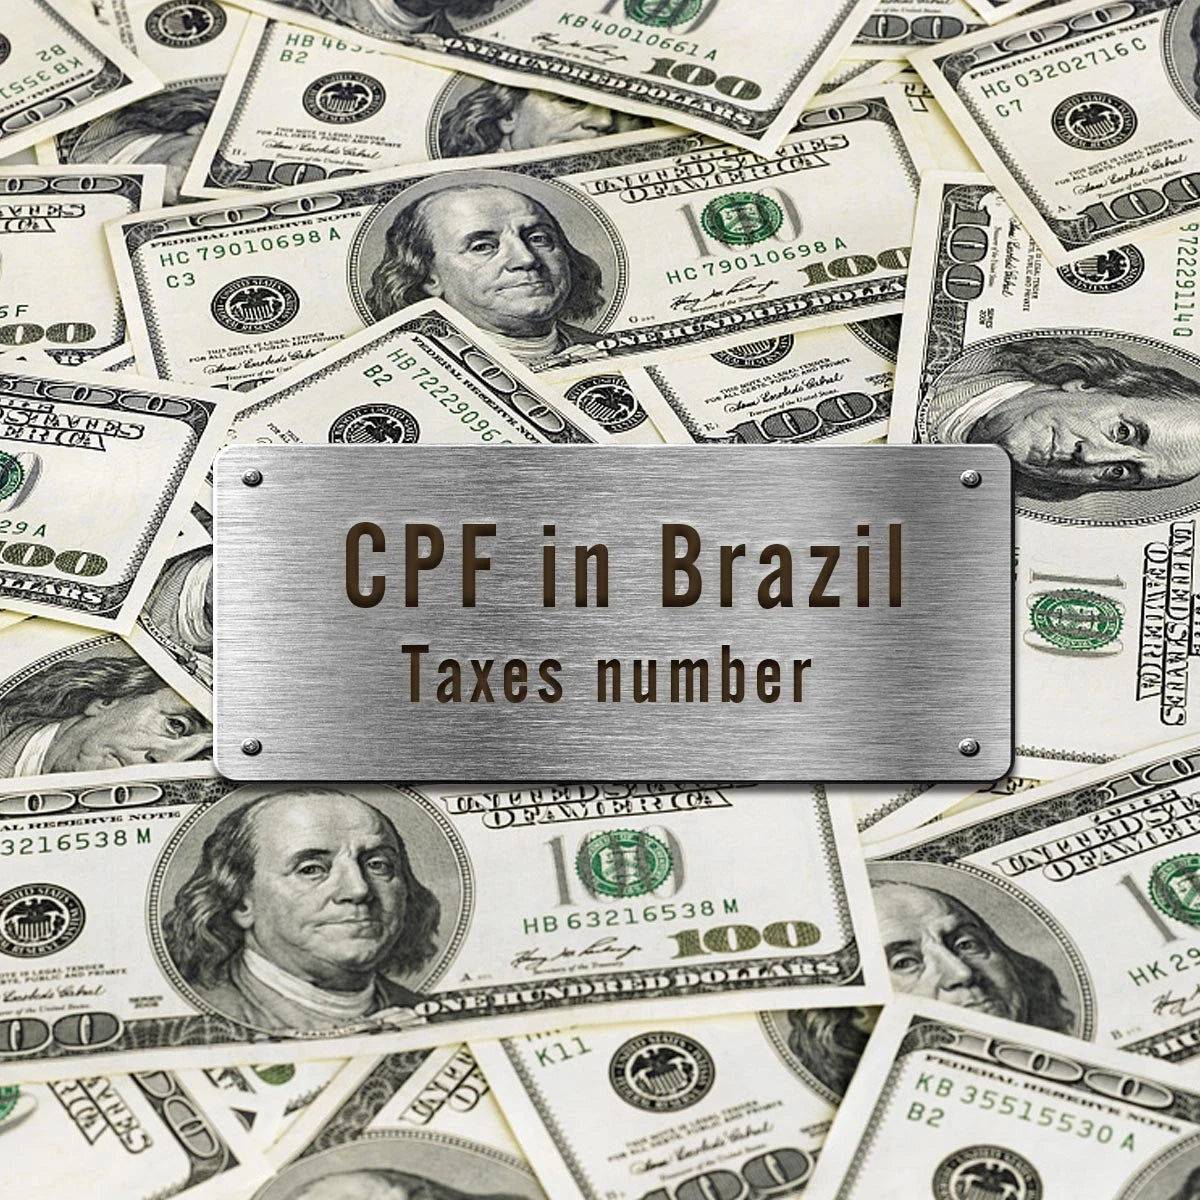 所有訂單（巴西）都需要稅號（CPF）